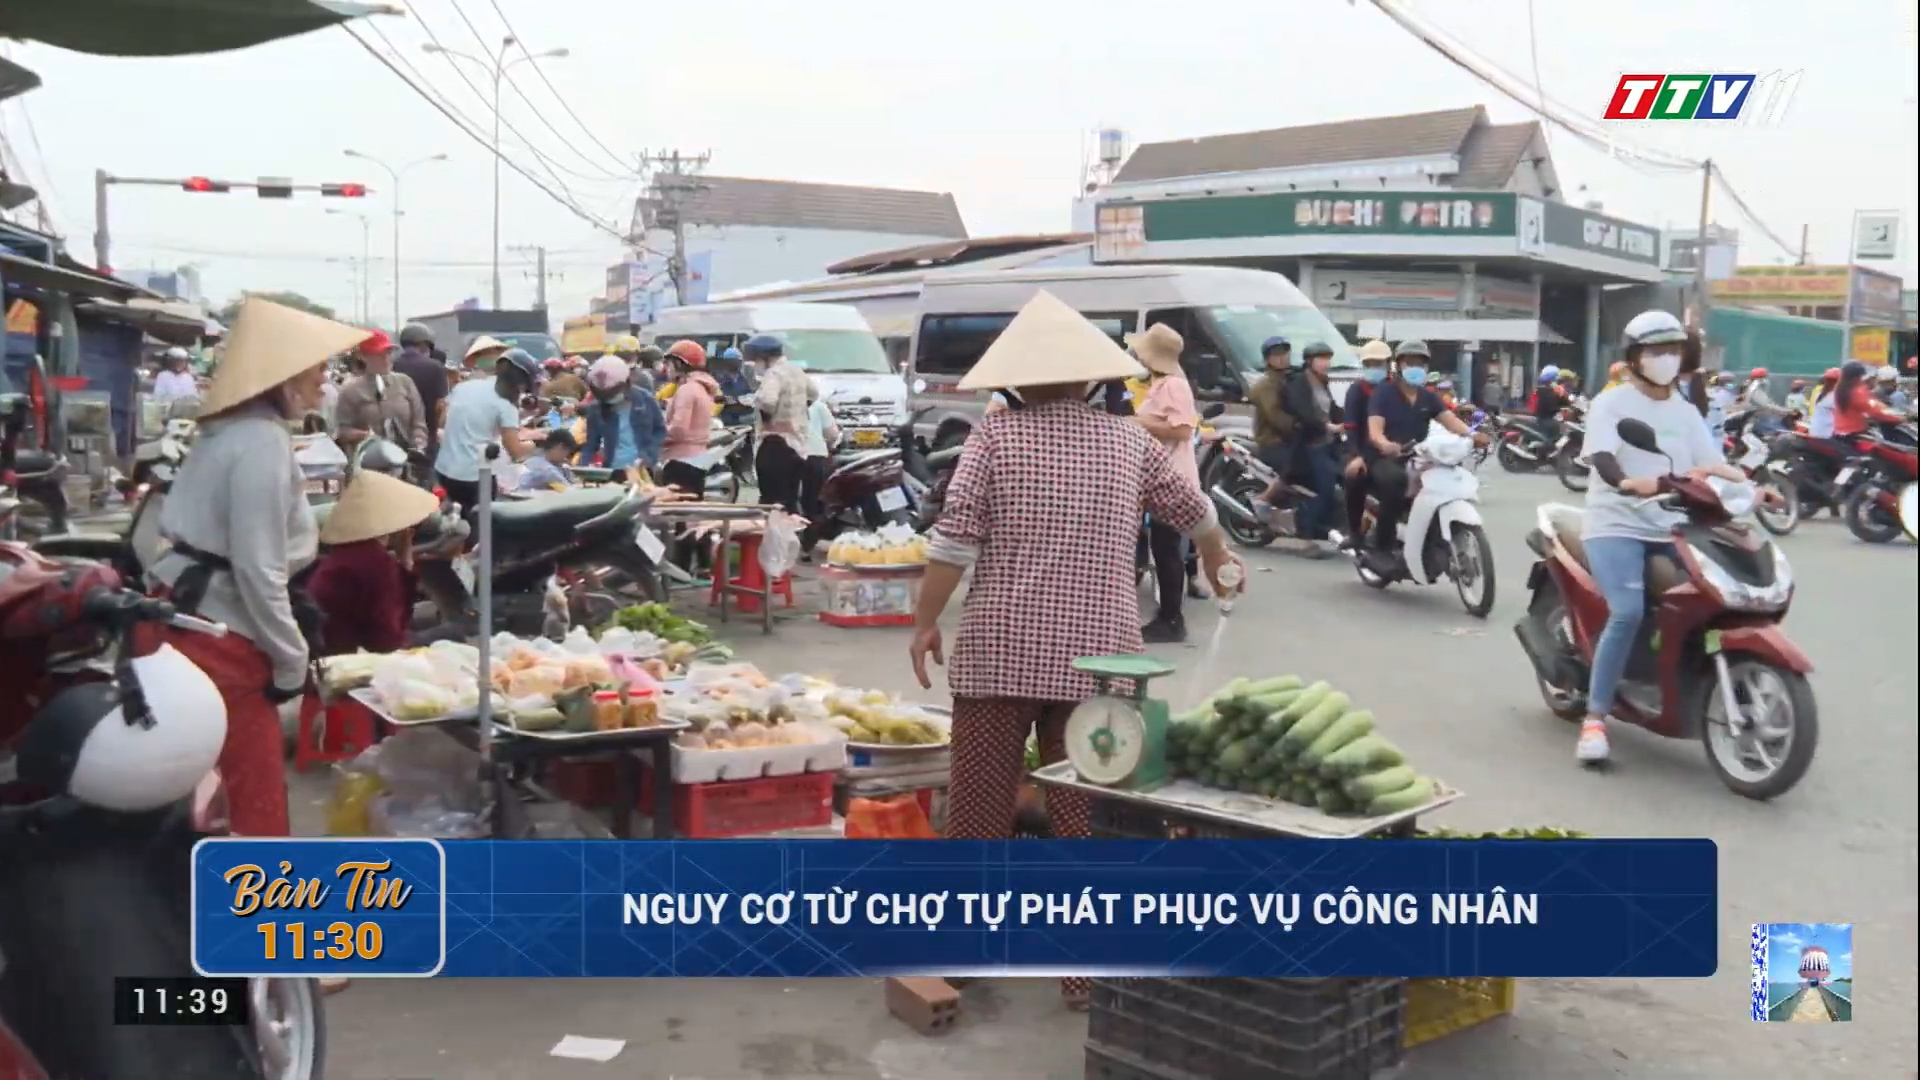 Nguy cơ từ chợ tự phát phục vụ công nhân | TayNinhTV